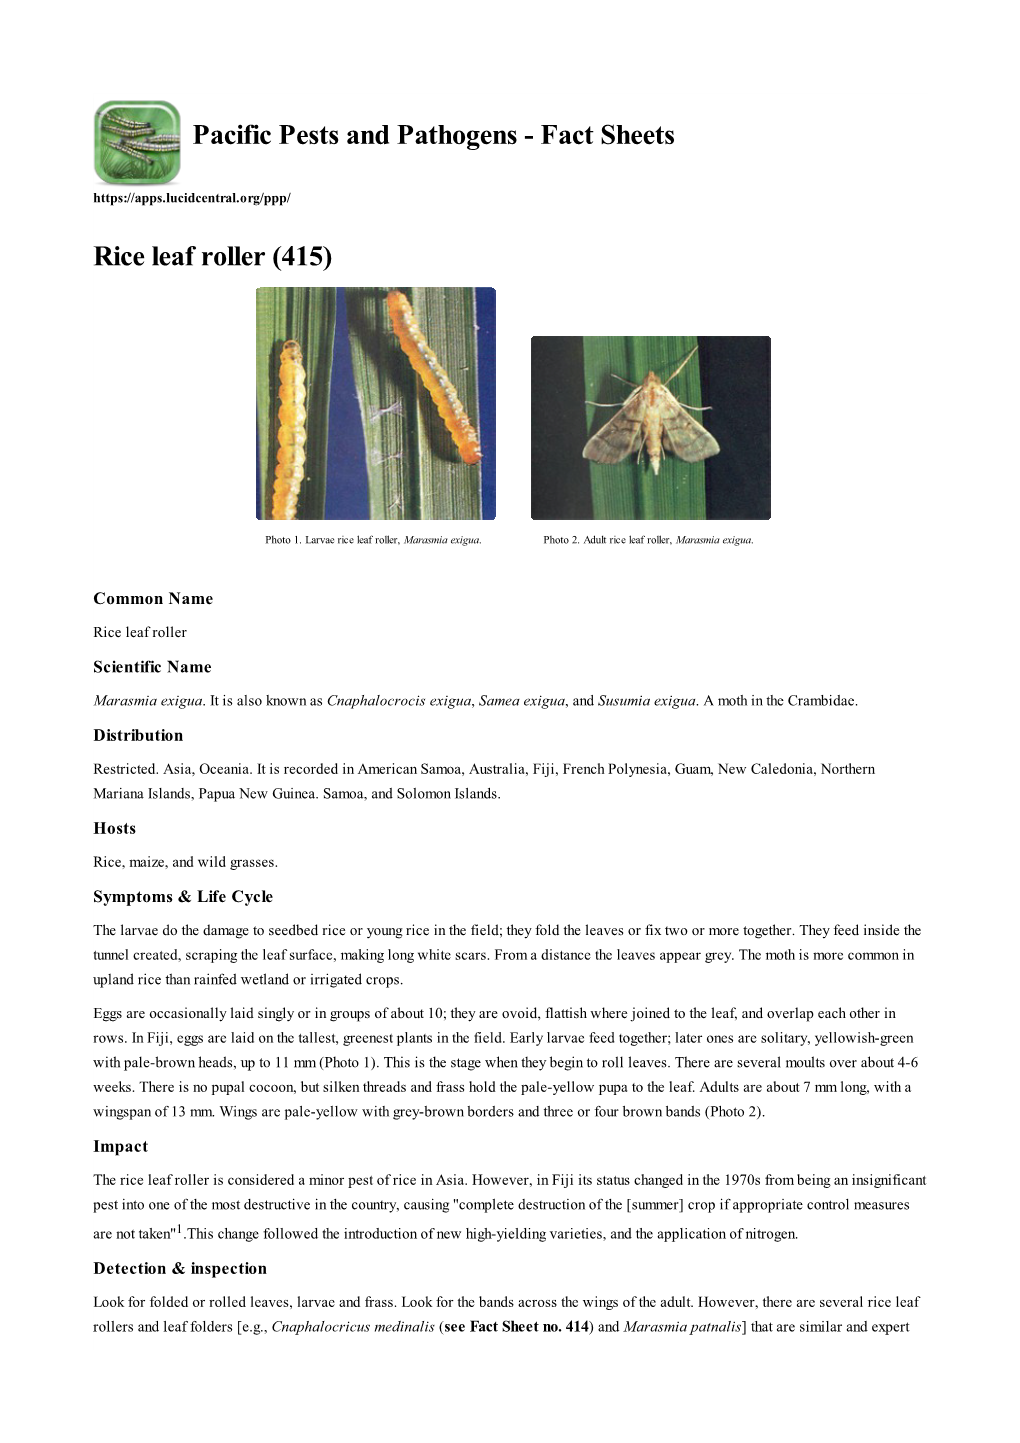 Rice Leaf Roller (415)